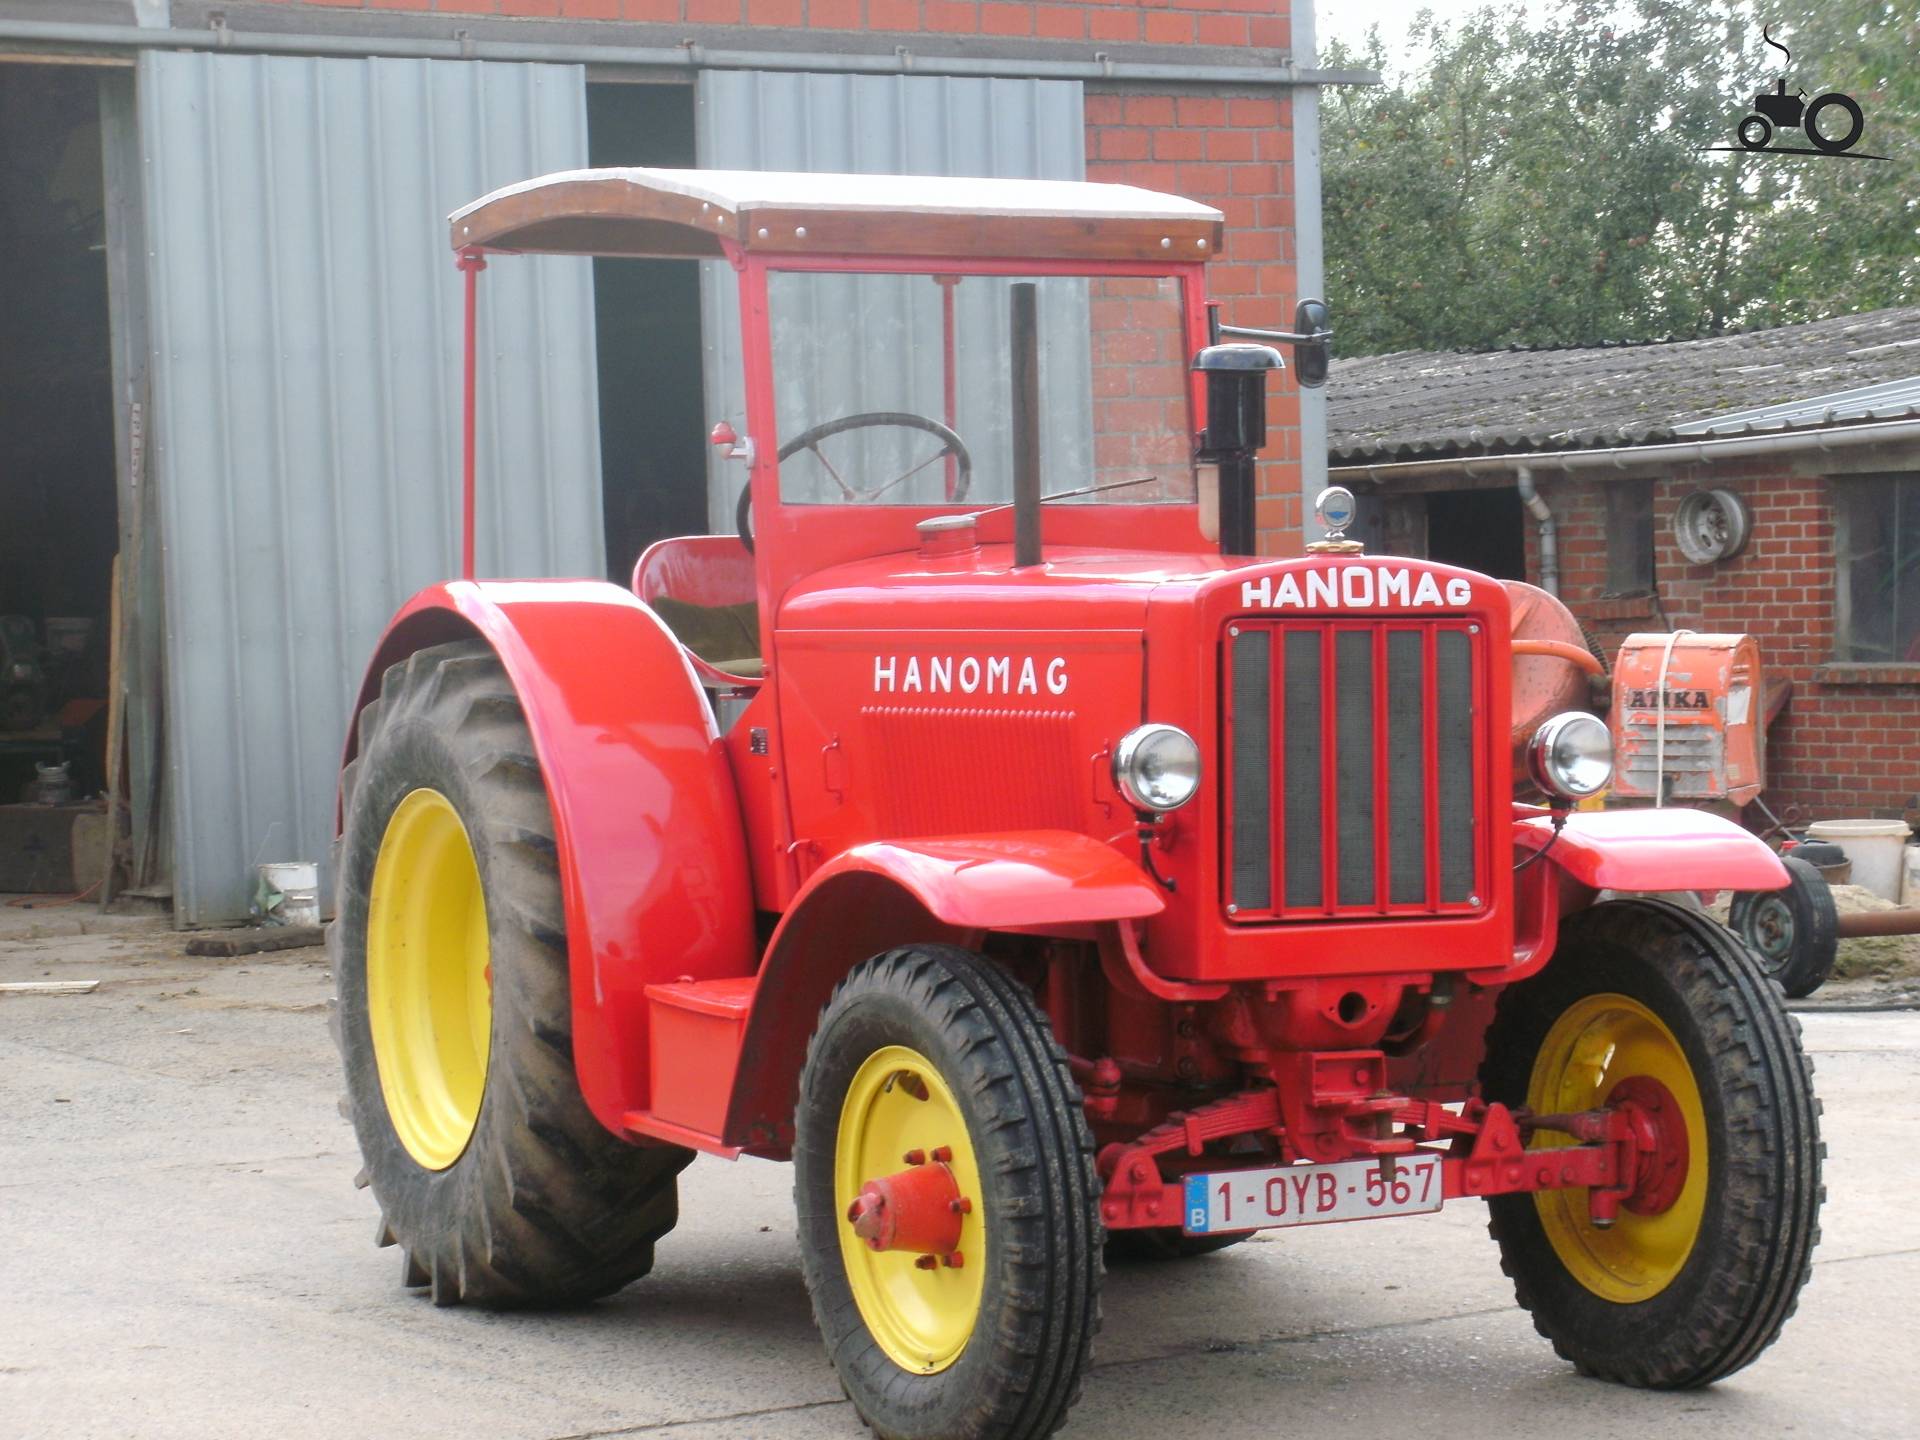 Hanomag R40 - Sverige - Traktor bild #599093